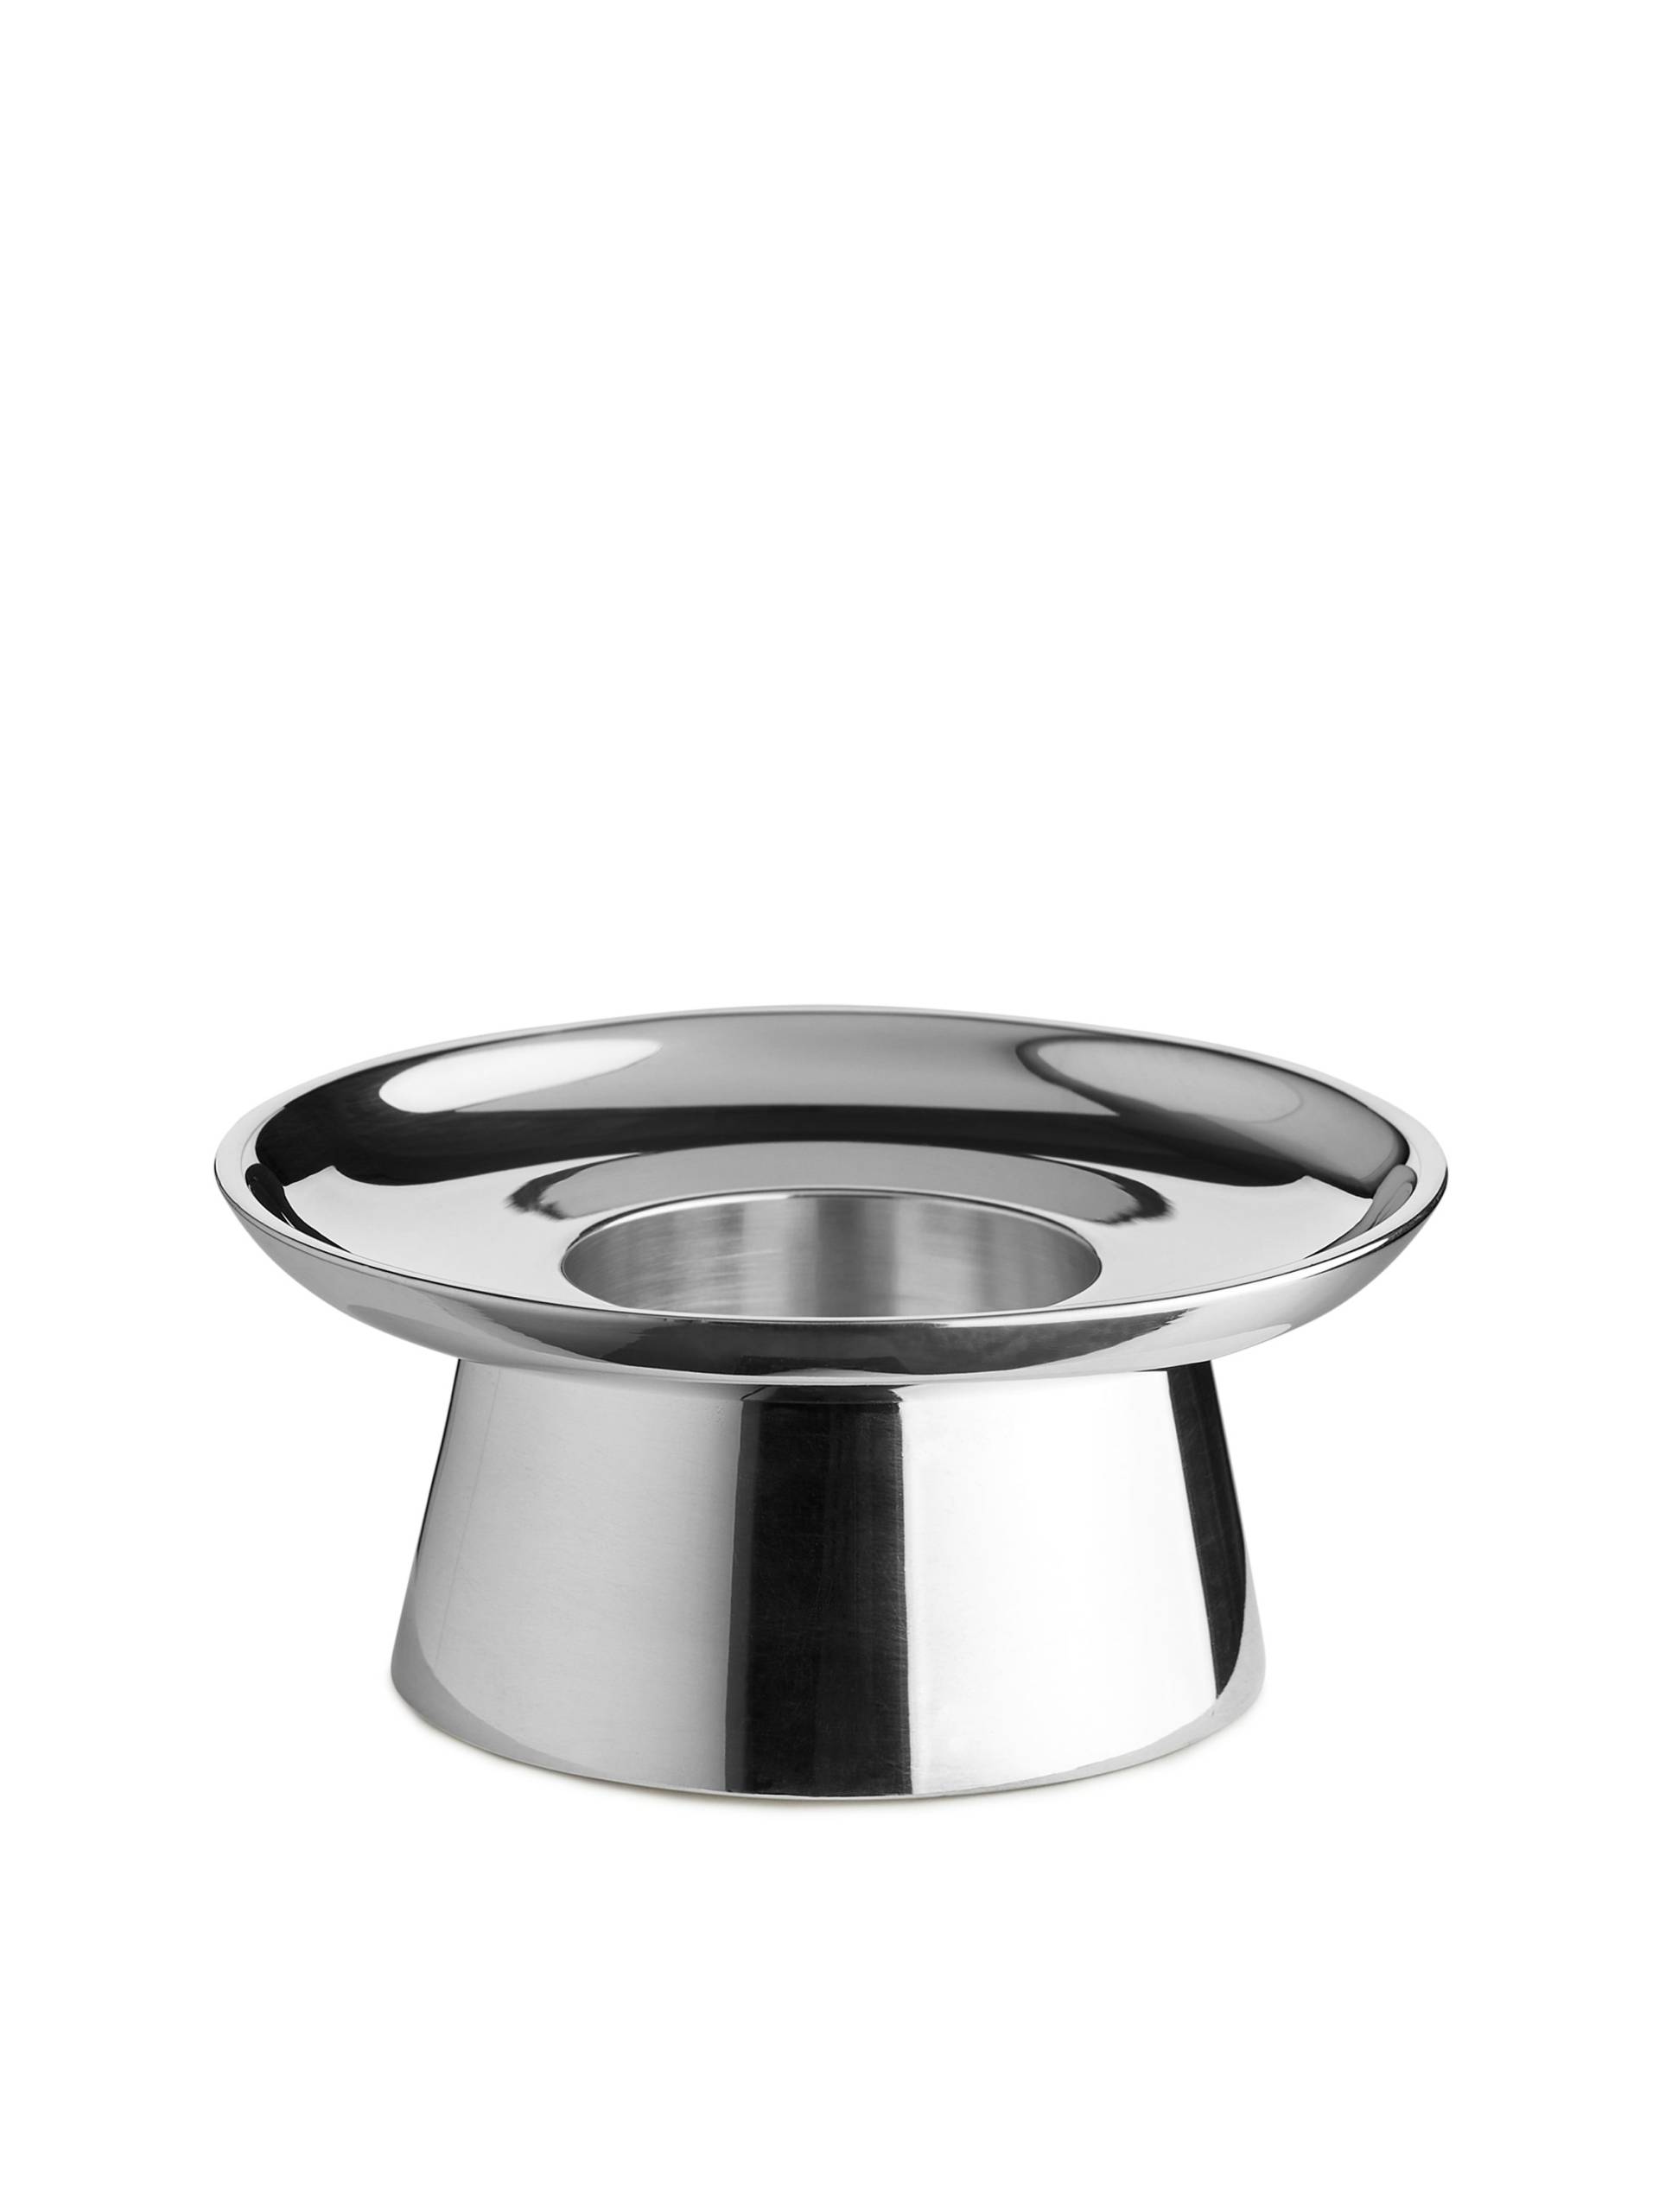 Arket Versilberter Teelichthalter Silber. Farbe: Silver von Arket